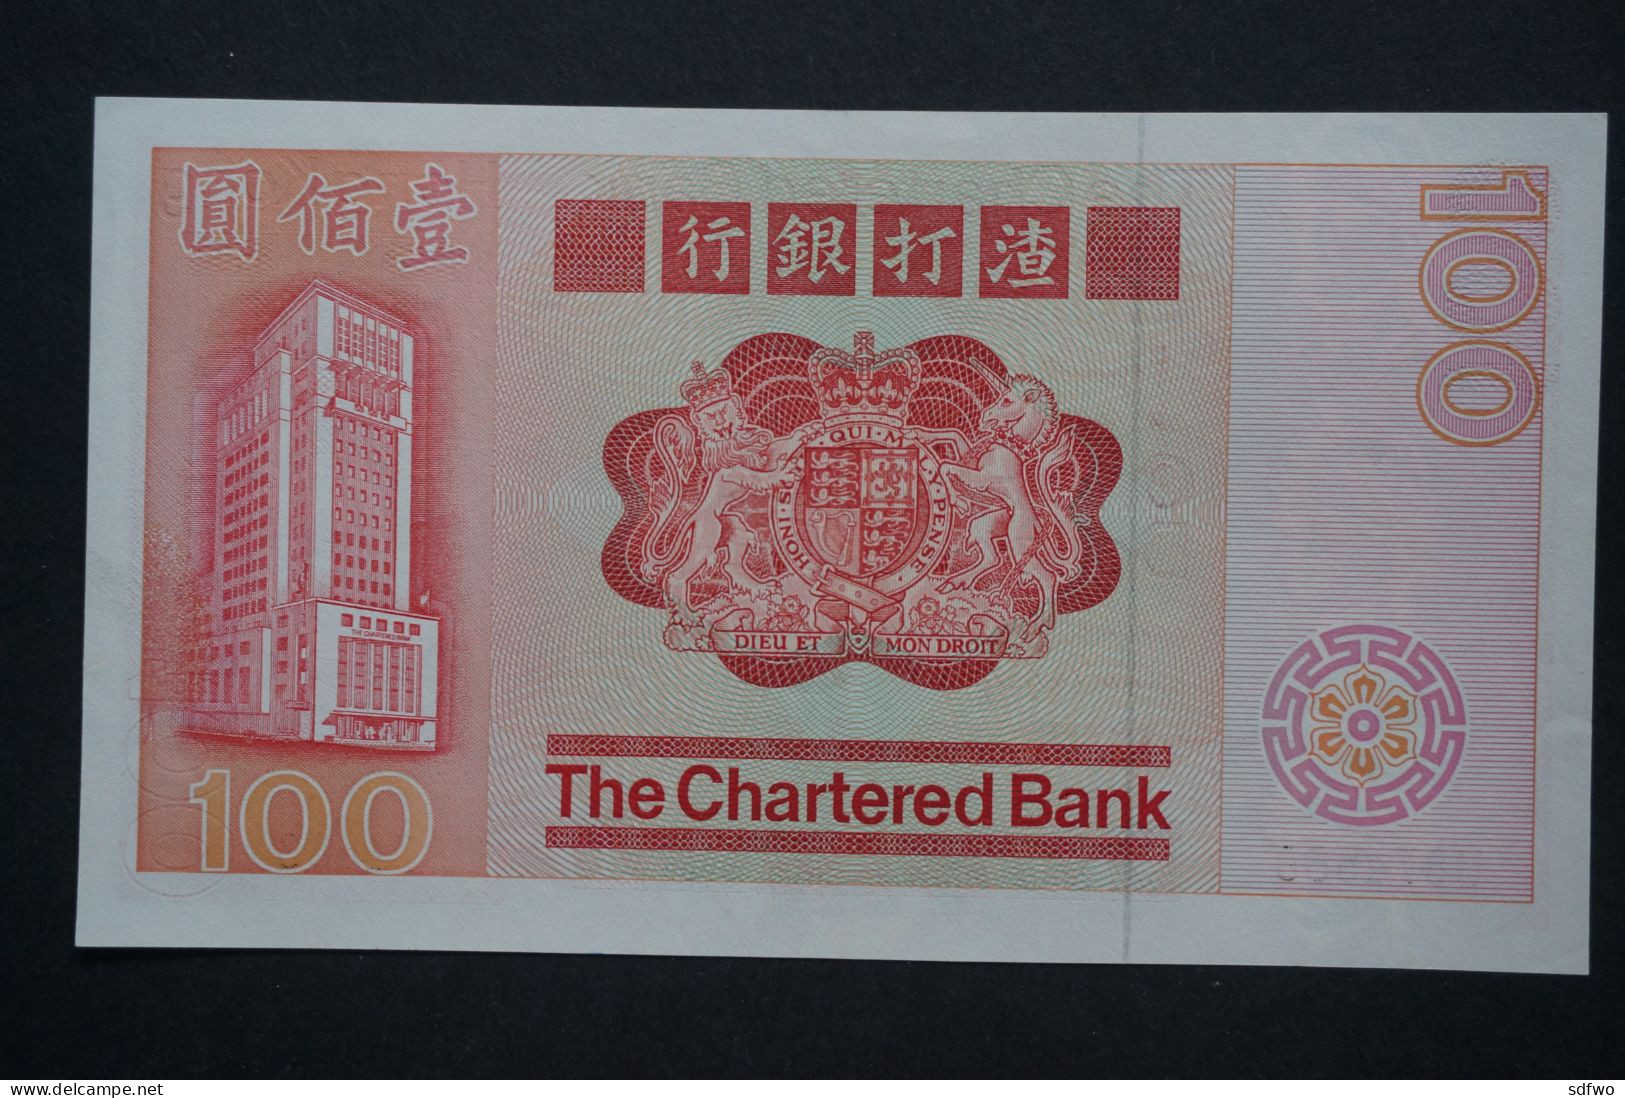 (Tv) 1982 HONG KONG OLD ISSUE - THE CHARTERED BANK 100 DOLLARS - #U874,568 - Hong Kong